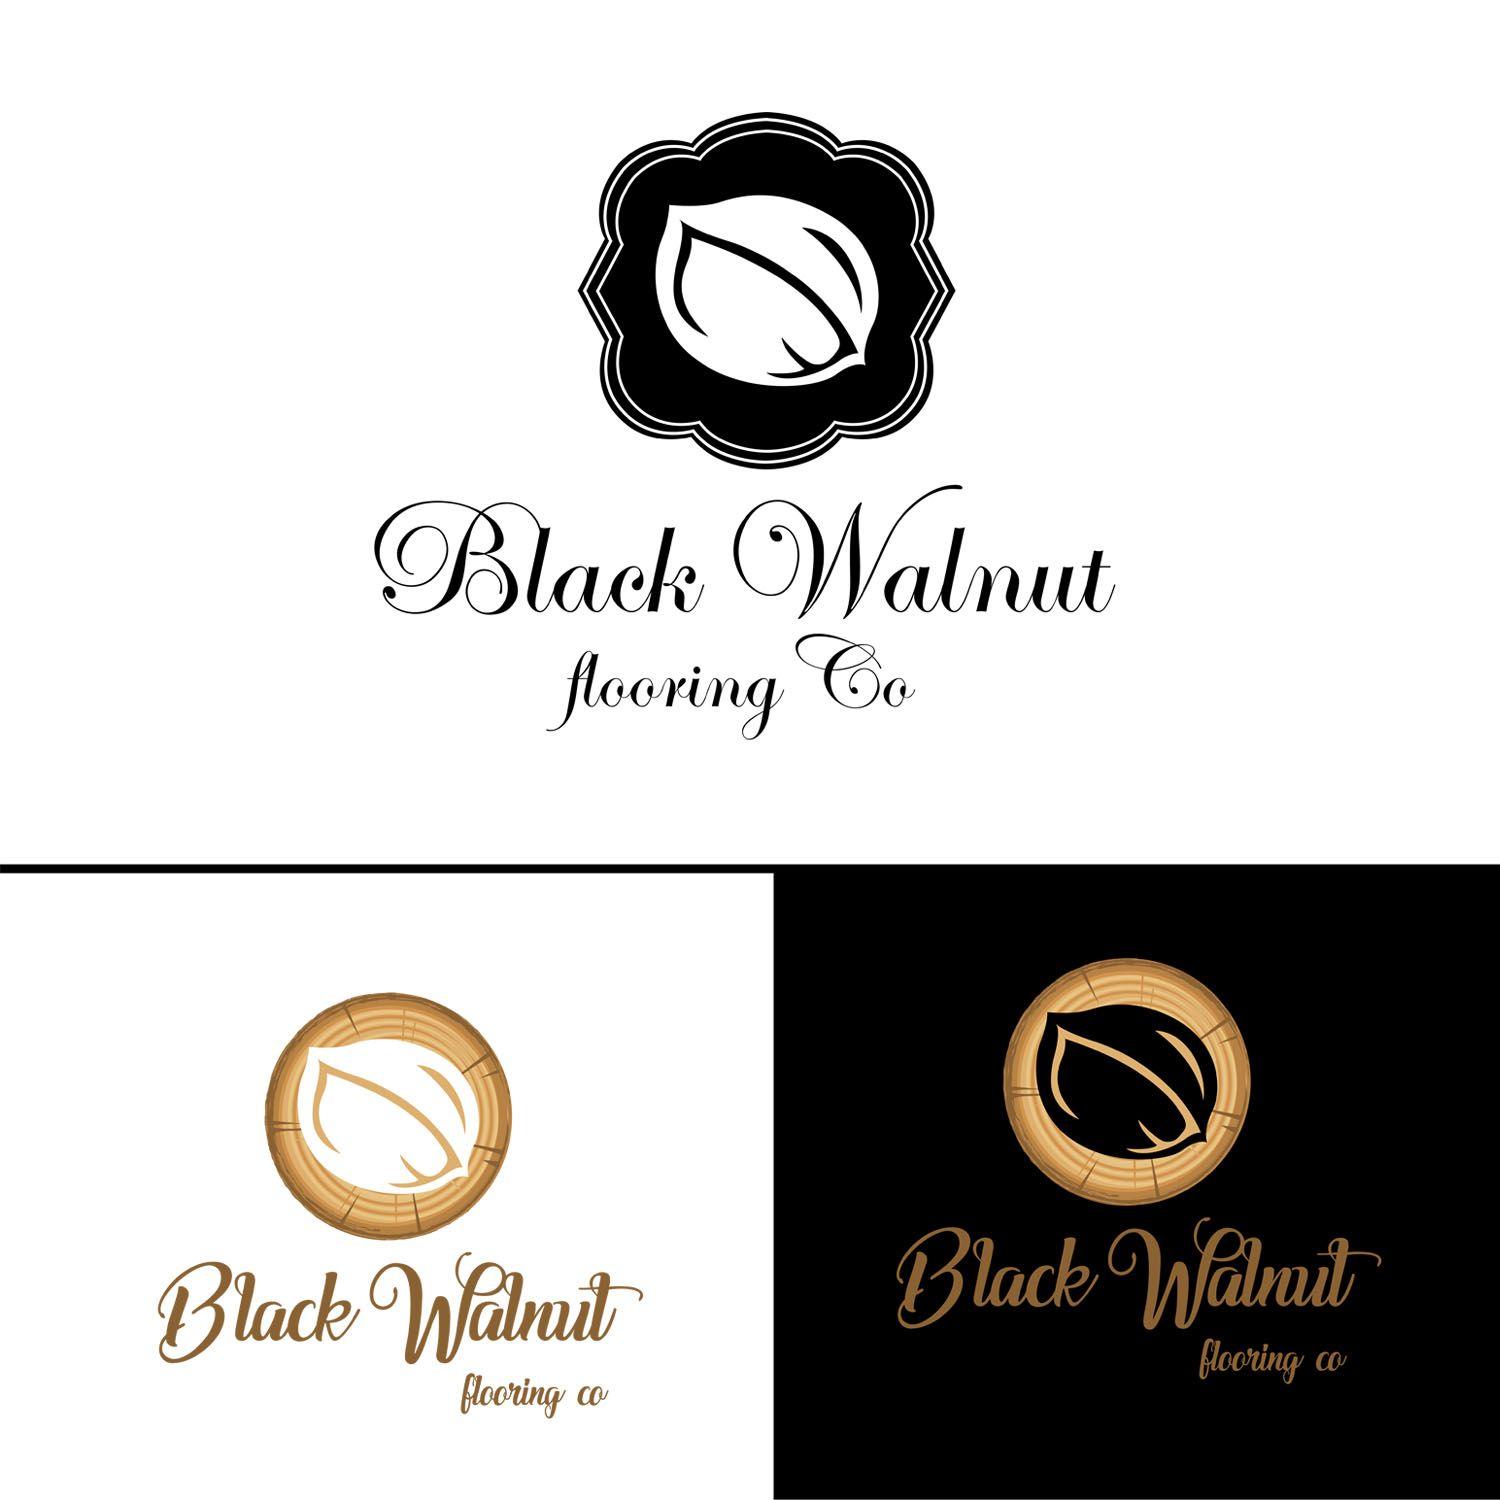 Walnut Logo - Upmarket, Modern, Flooring Logo Design for Black Walnut Flooring Co ...